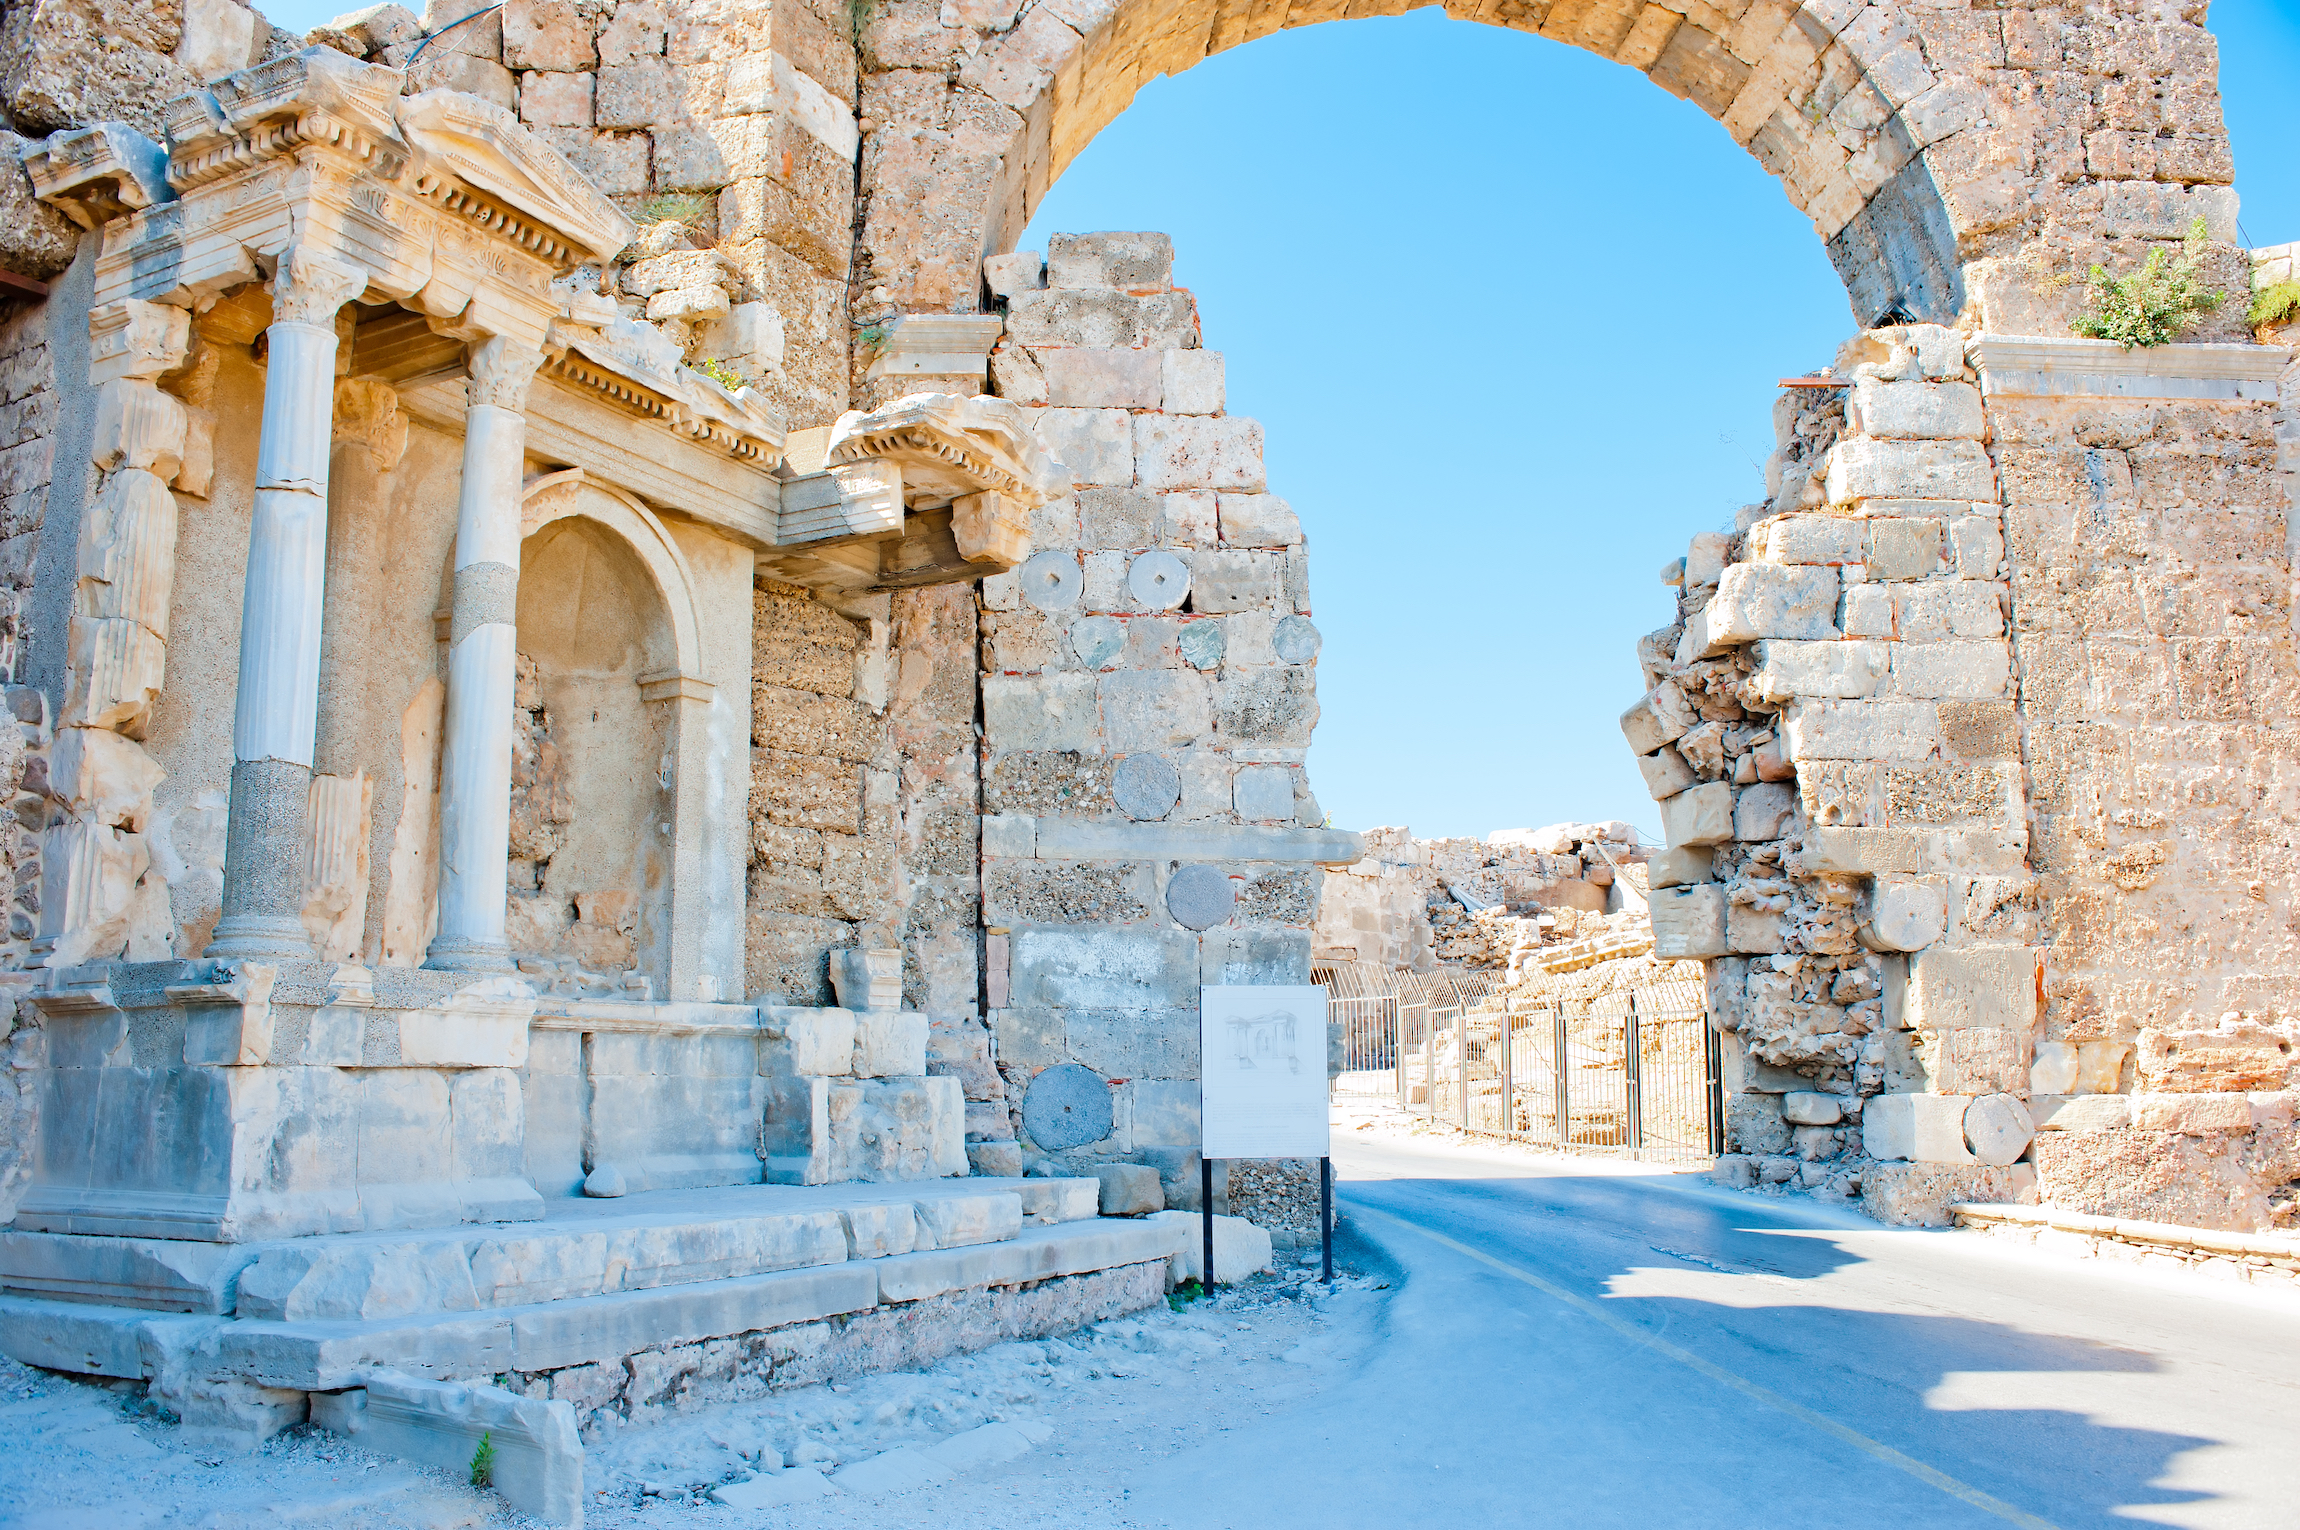 Ruiny Side w Turcji, łuk z białego kamienia, wiosna w Turcji - TOP 20 atrakcji w Kemer na Riwierze Tureckiej 